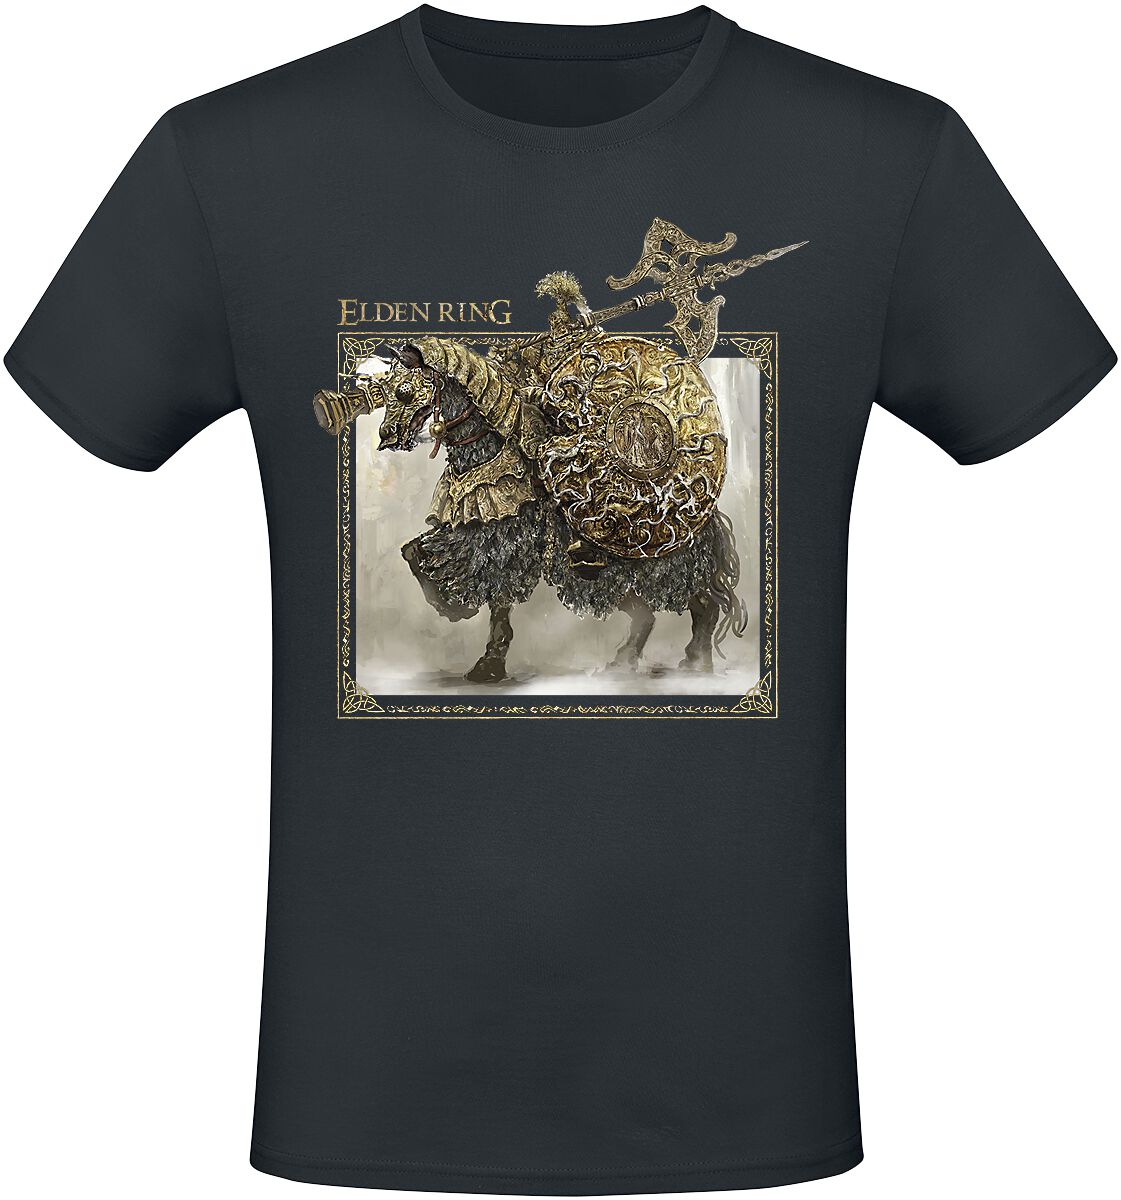 Elden Ring - Gaming T-Shirt - Tree Sentinel - S bis XXL - für Männer - Größe XL - schwarz  - EMP exklusives Merchandise!